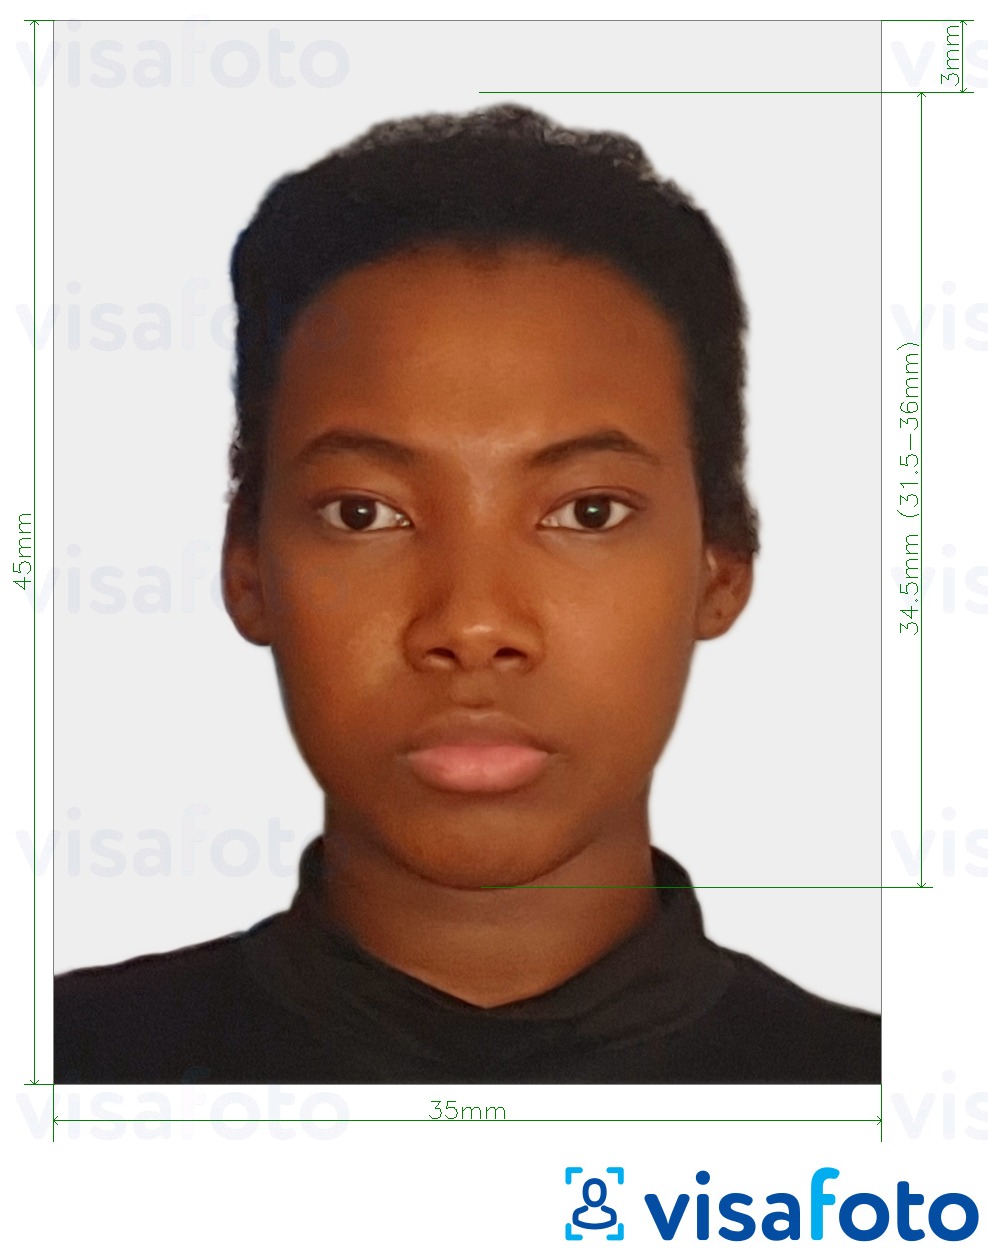 Voorbeeld van foto voor Congo (Brazzaville) paspoort 35x45 mm (3.5x4.5 cm) met exacte maatspecificatie